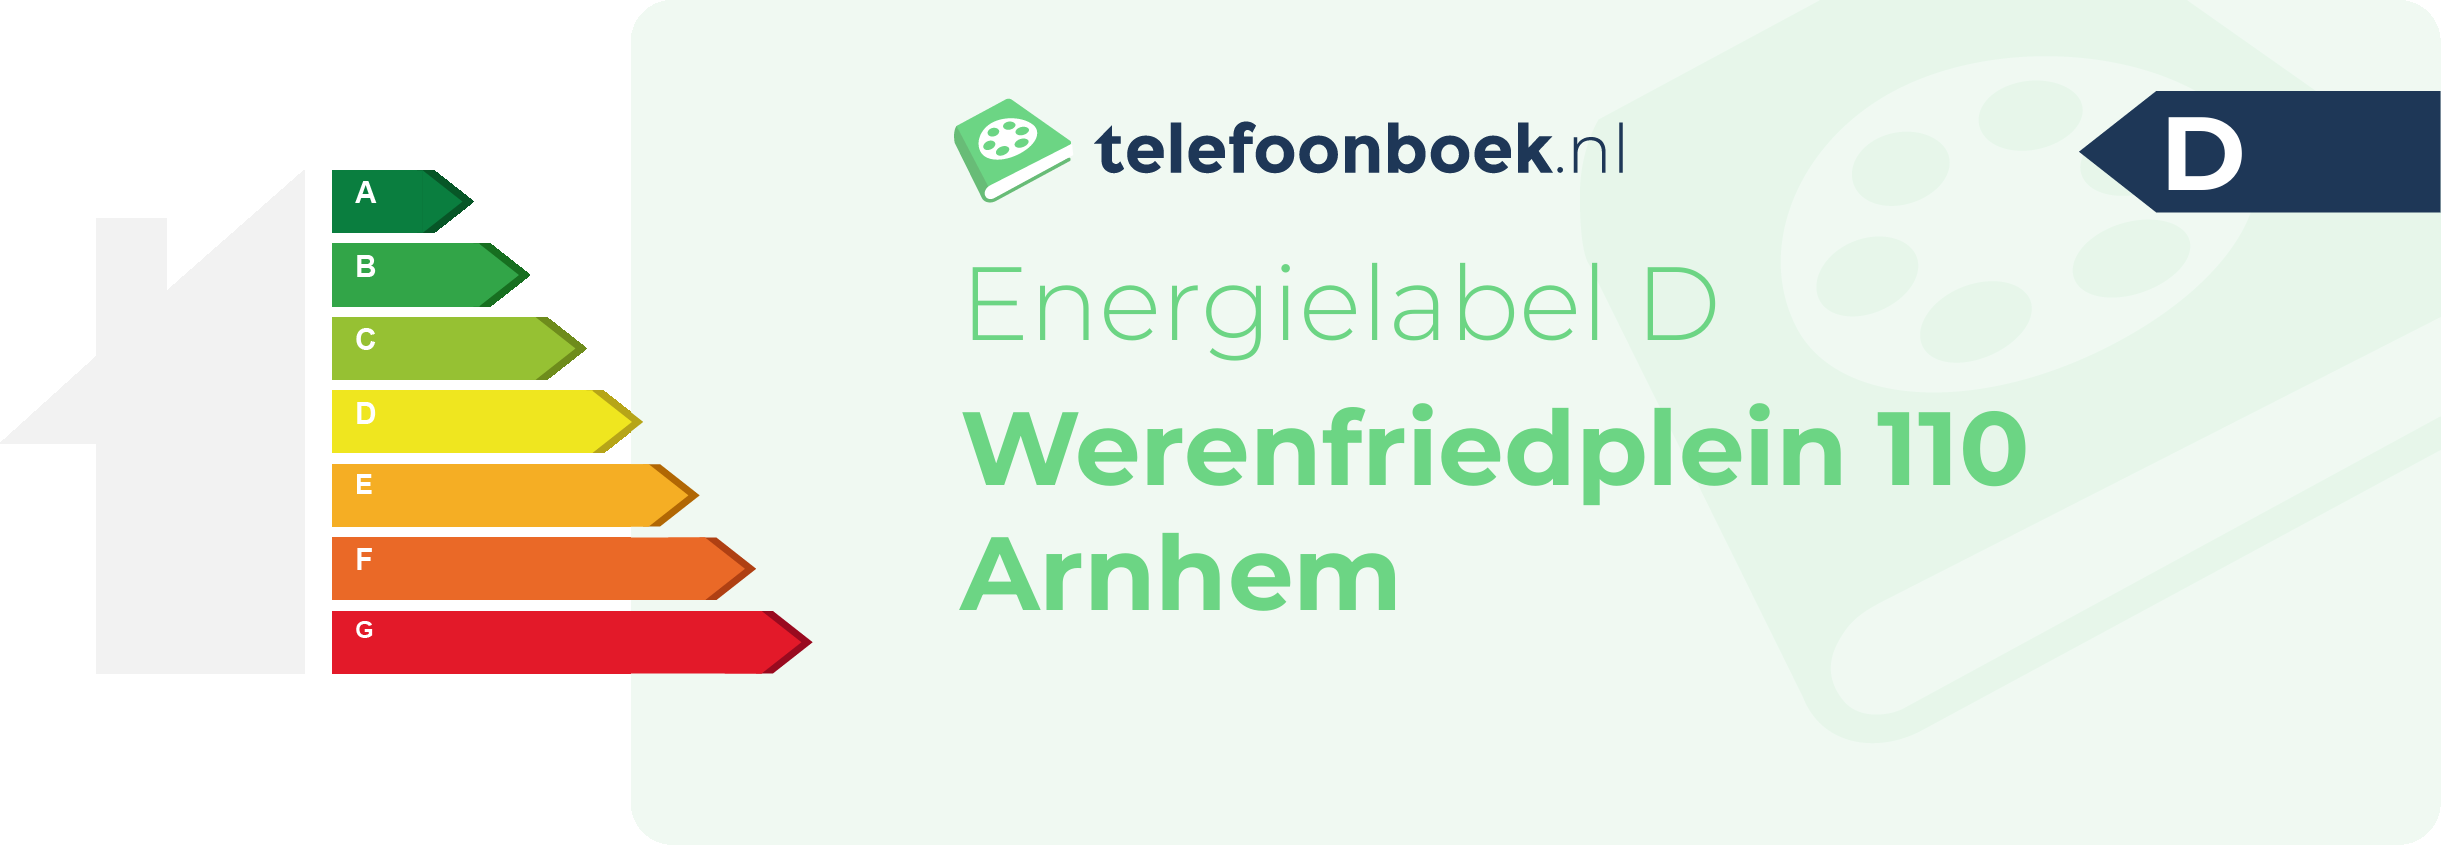 Energielabel Werenfriedplein 110 Arnhem